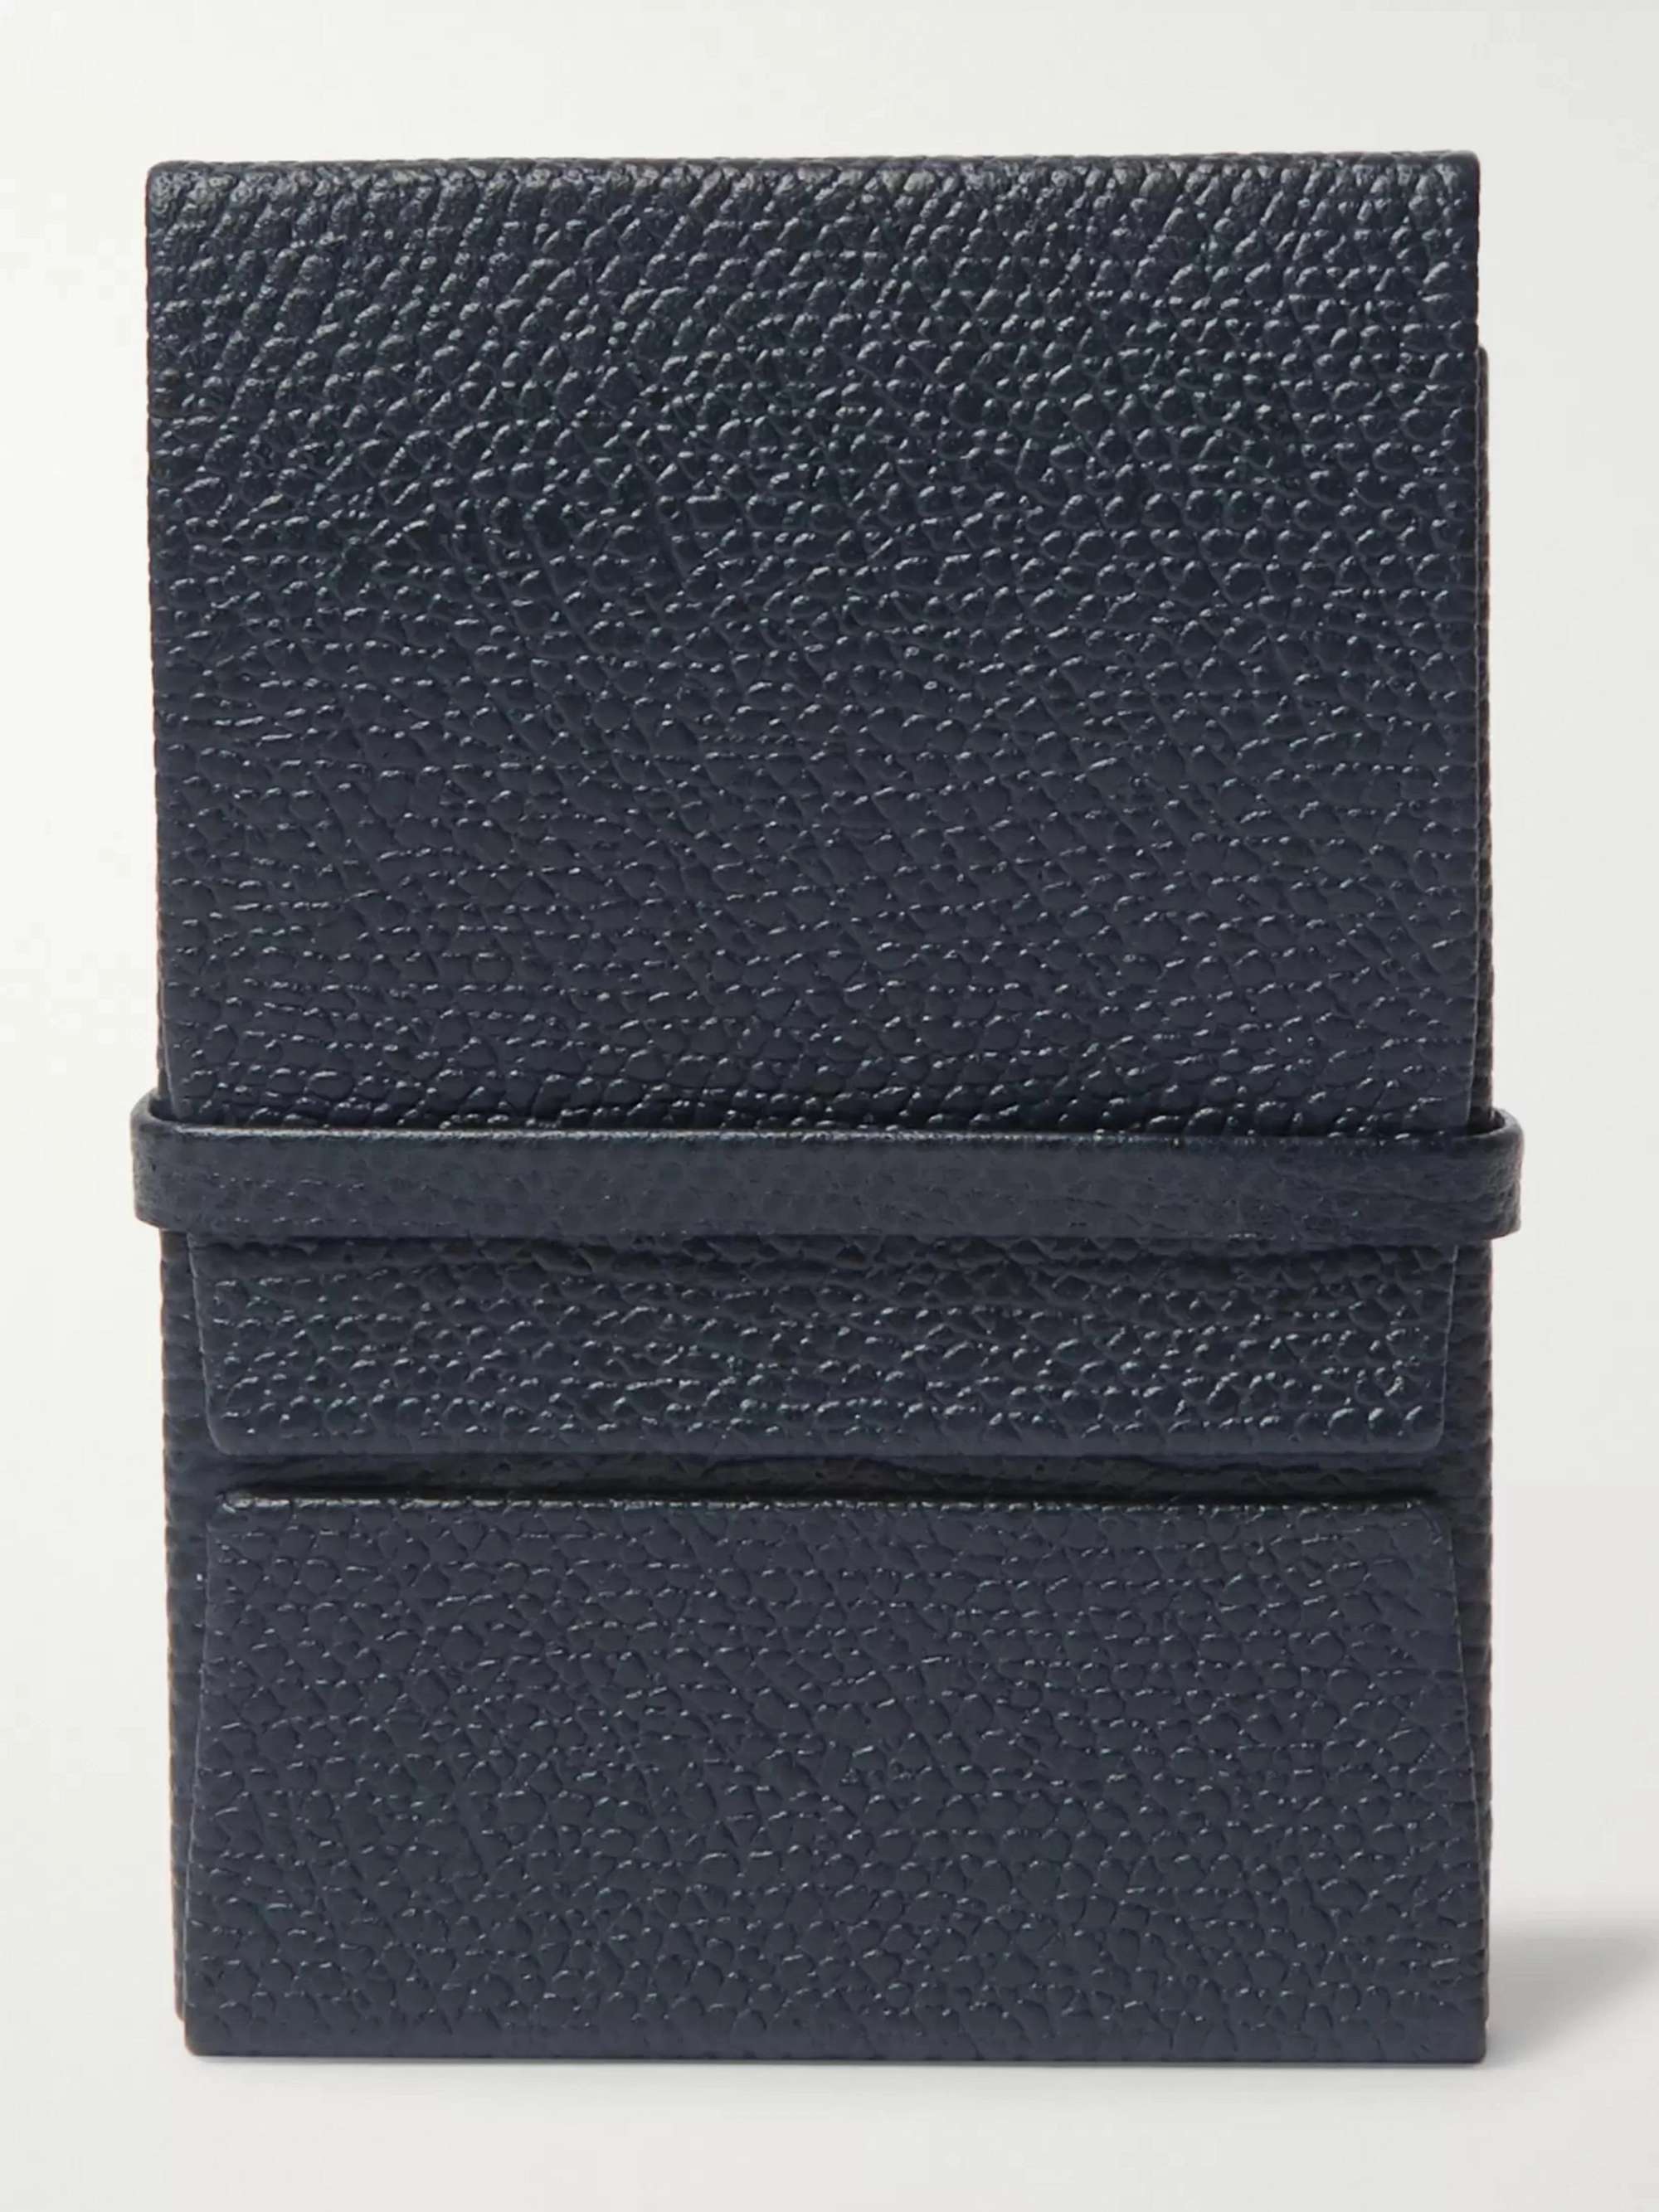 VALEXTRA Full-Grain Leather Cardholder